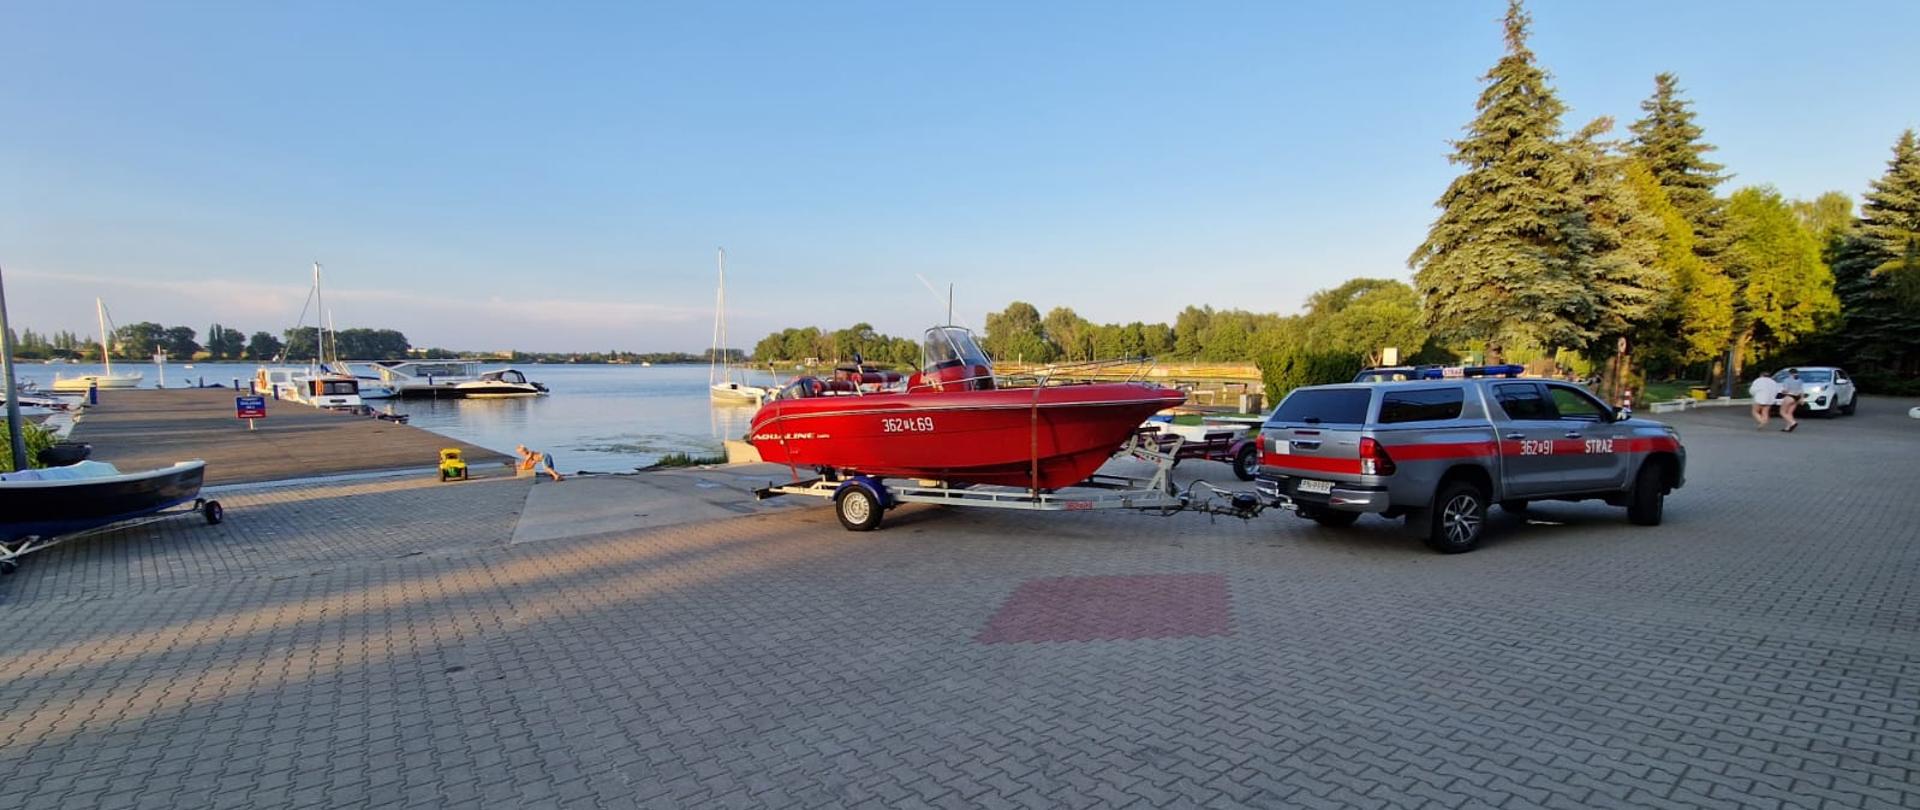 Zdjęcie przedstawia samochód strażacki z łodzią na przystani przed wodowaniem. Na zdjęciu widać pomost, łodzie oraz jezioro